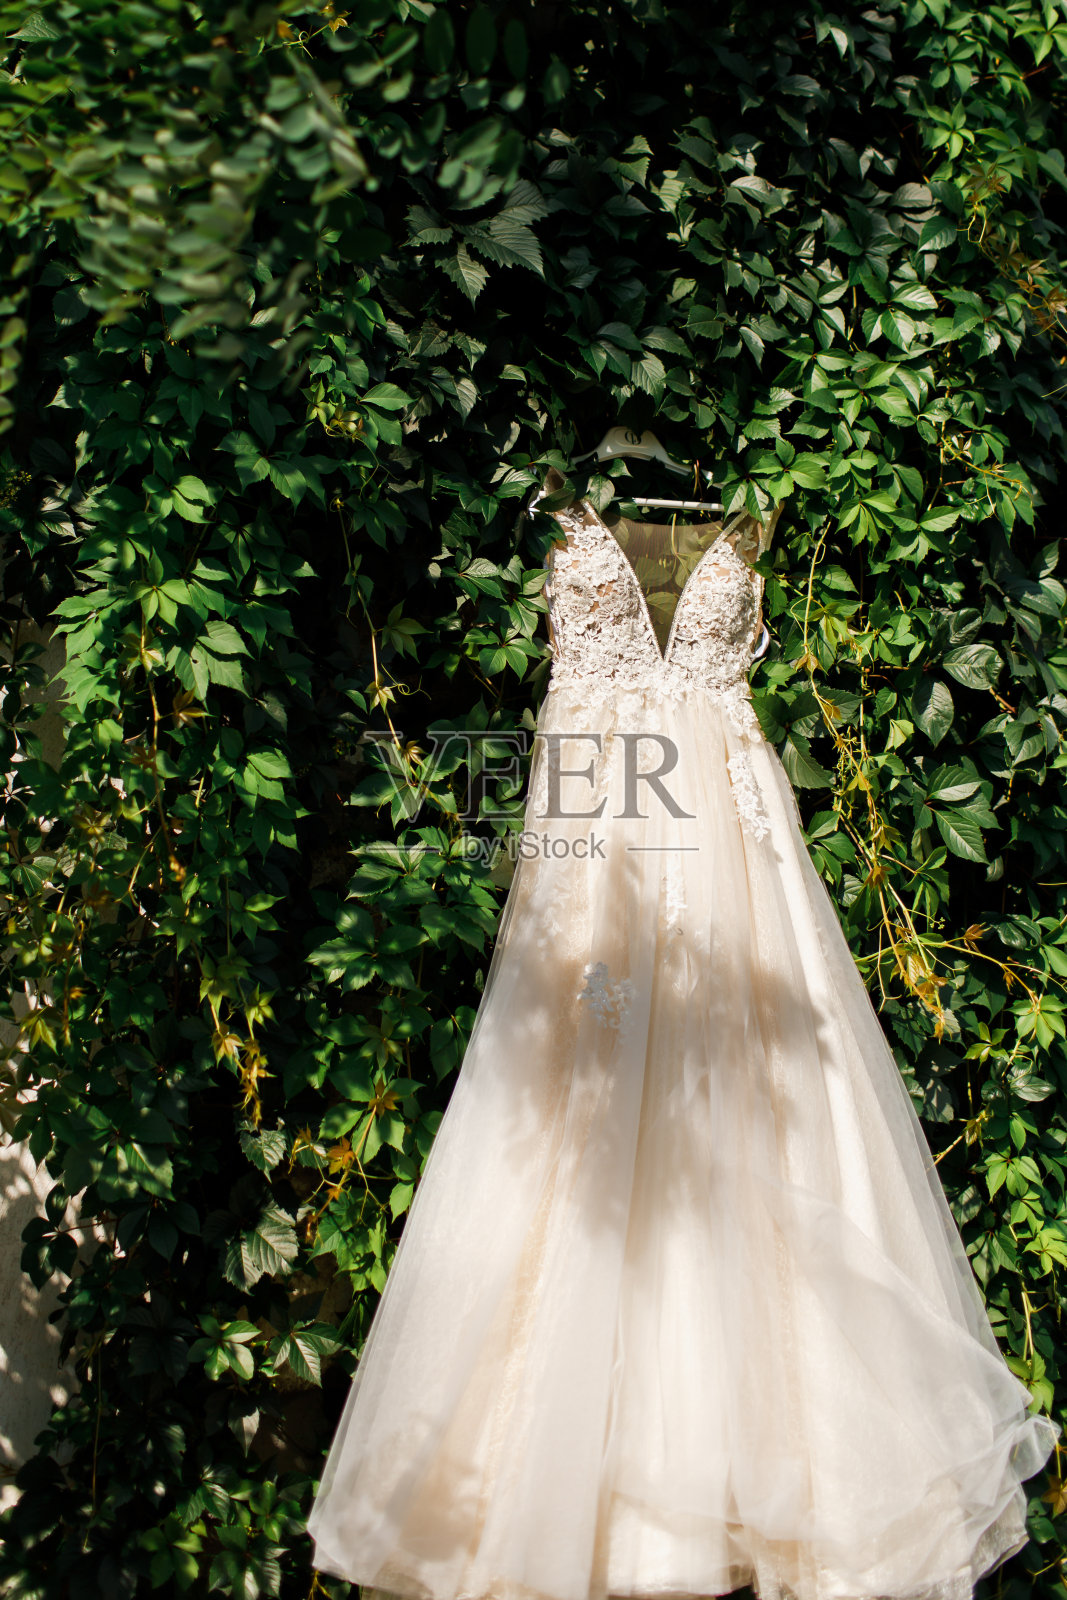 婚纱摄影:蕾丝婚纱挂在一棵常青树上照片摄影图片